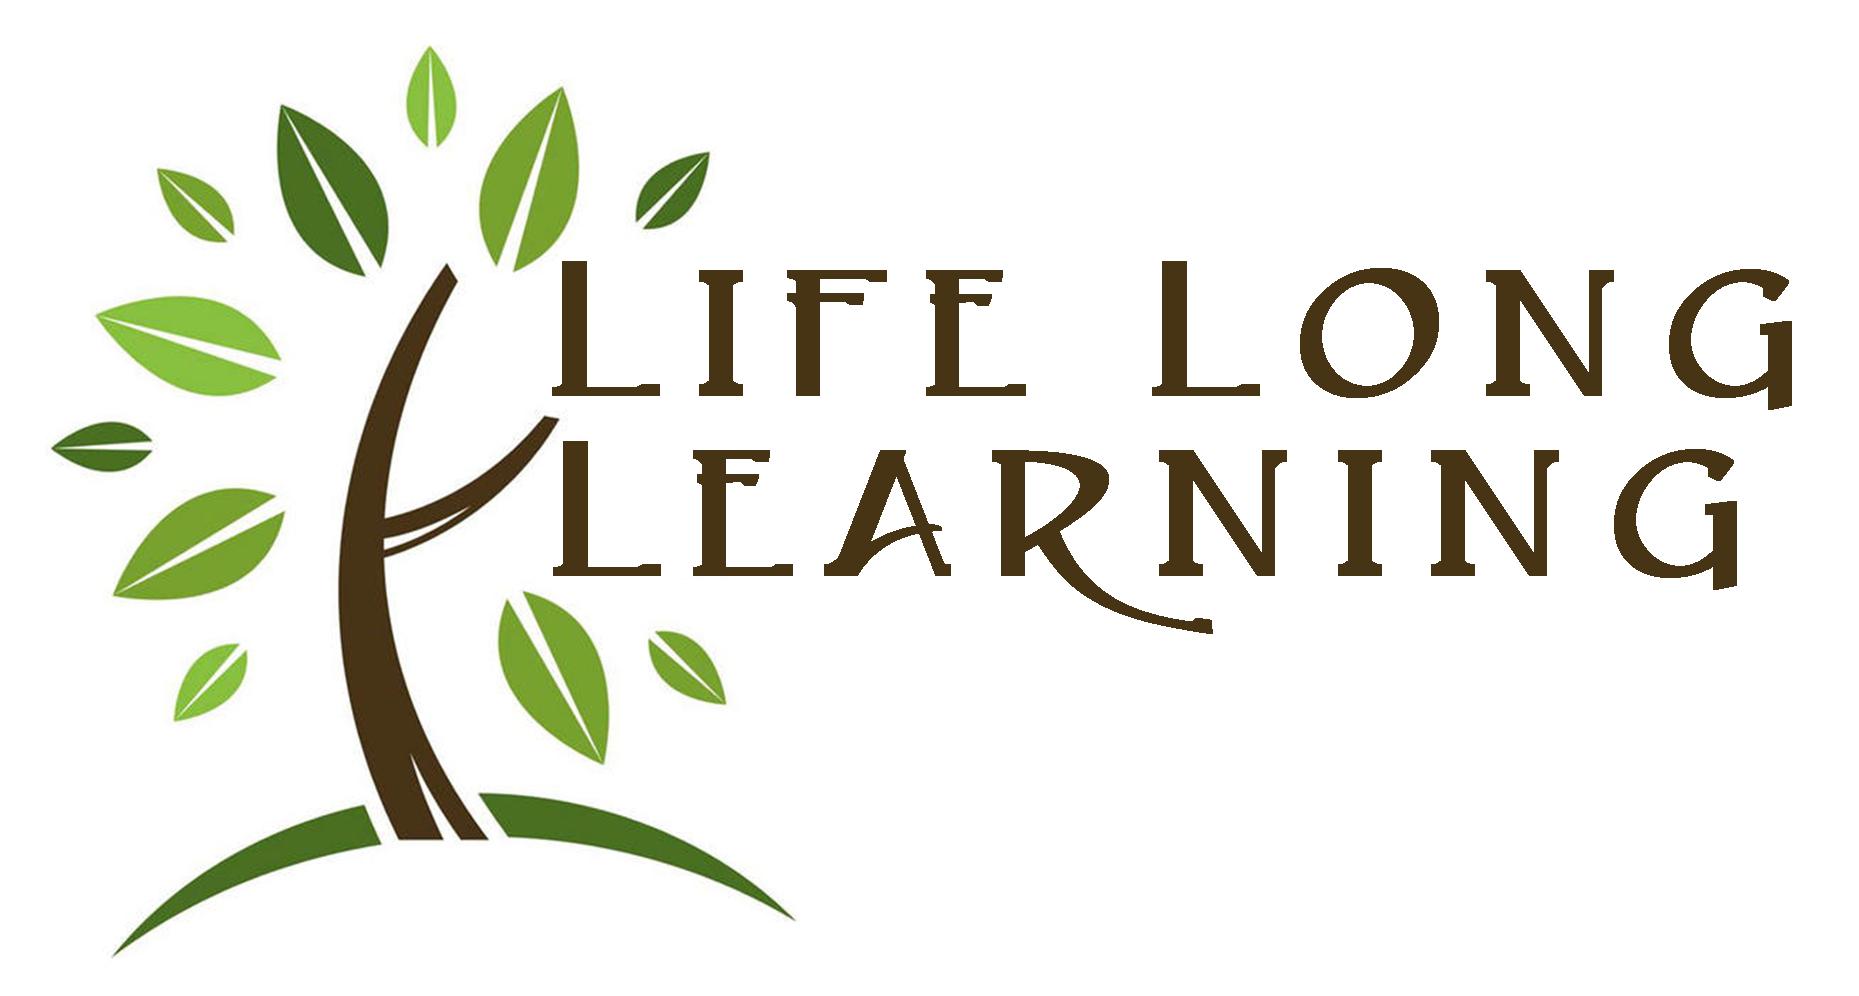 Life learning what is. Концепция lifelong Learning. Life Learning концепция. Концепция lifelong Learning. Непрерывное образование. Концепция lifelong Learning иконка.